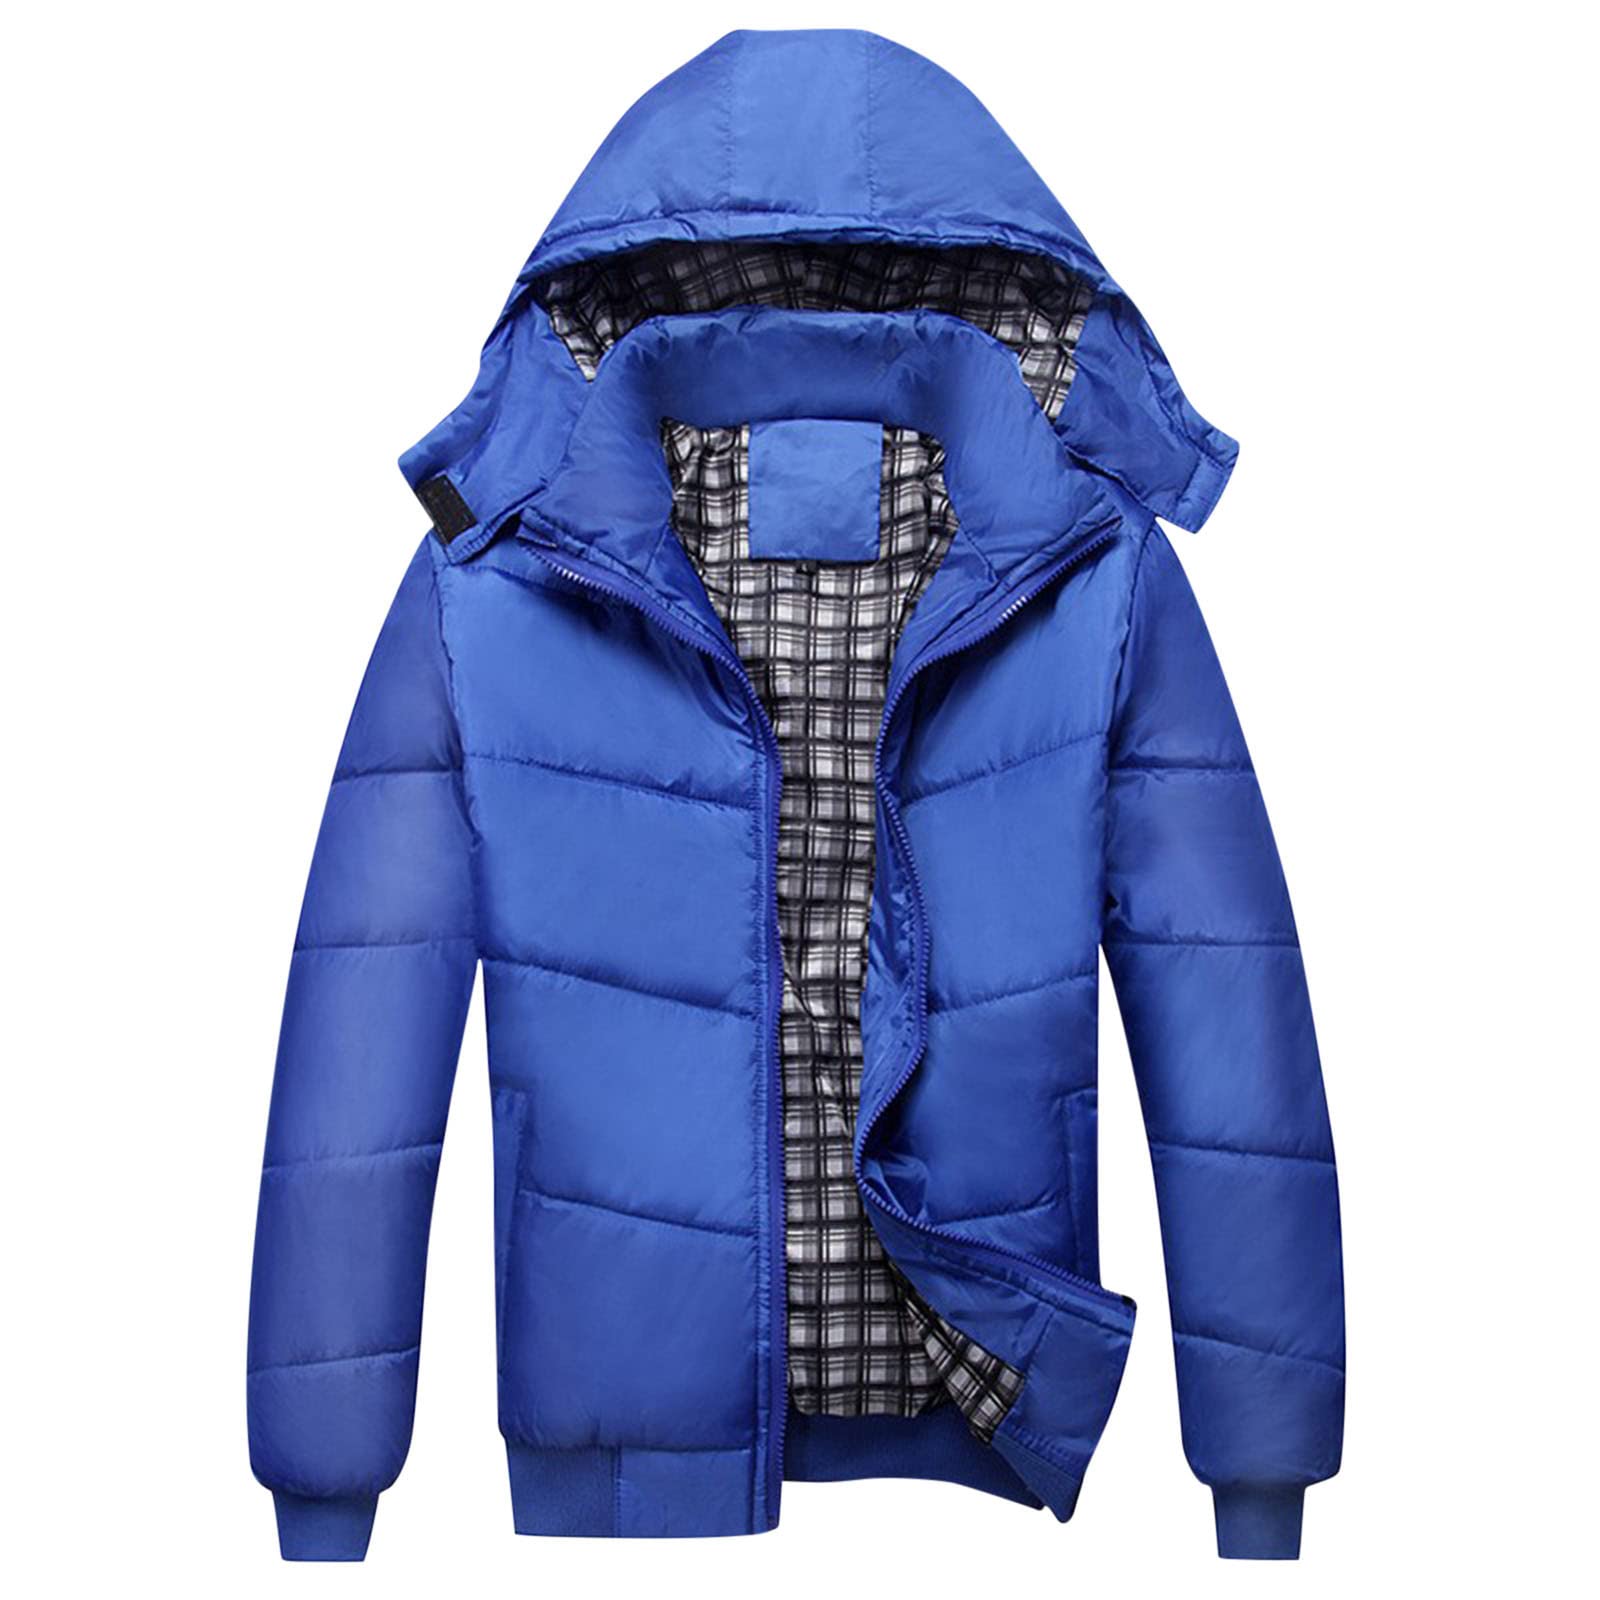 KidSuper Men's Checkered Puffer Jacket, Blue, Men's, XL, Coats Jackets & Outerwear Winter Coats Parkas & Puffer Coats